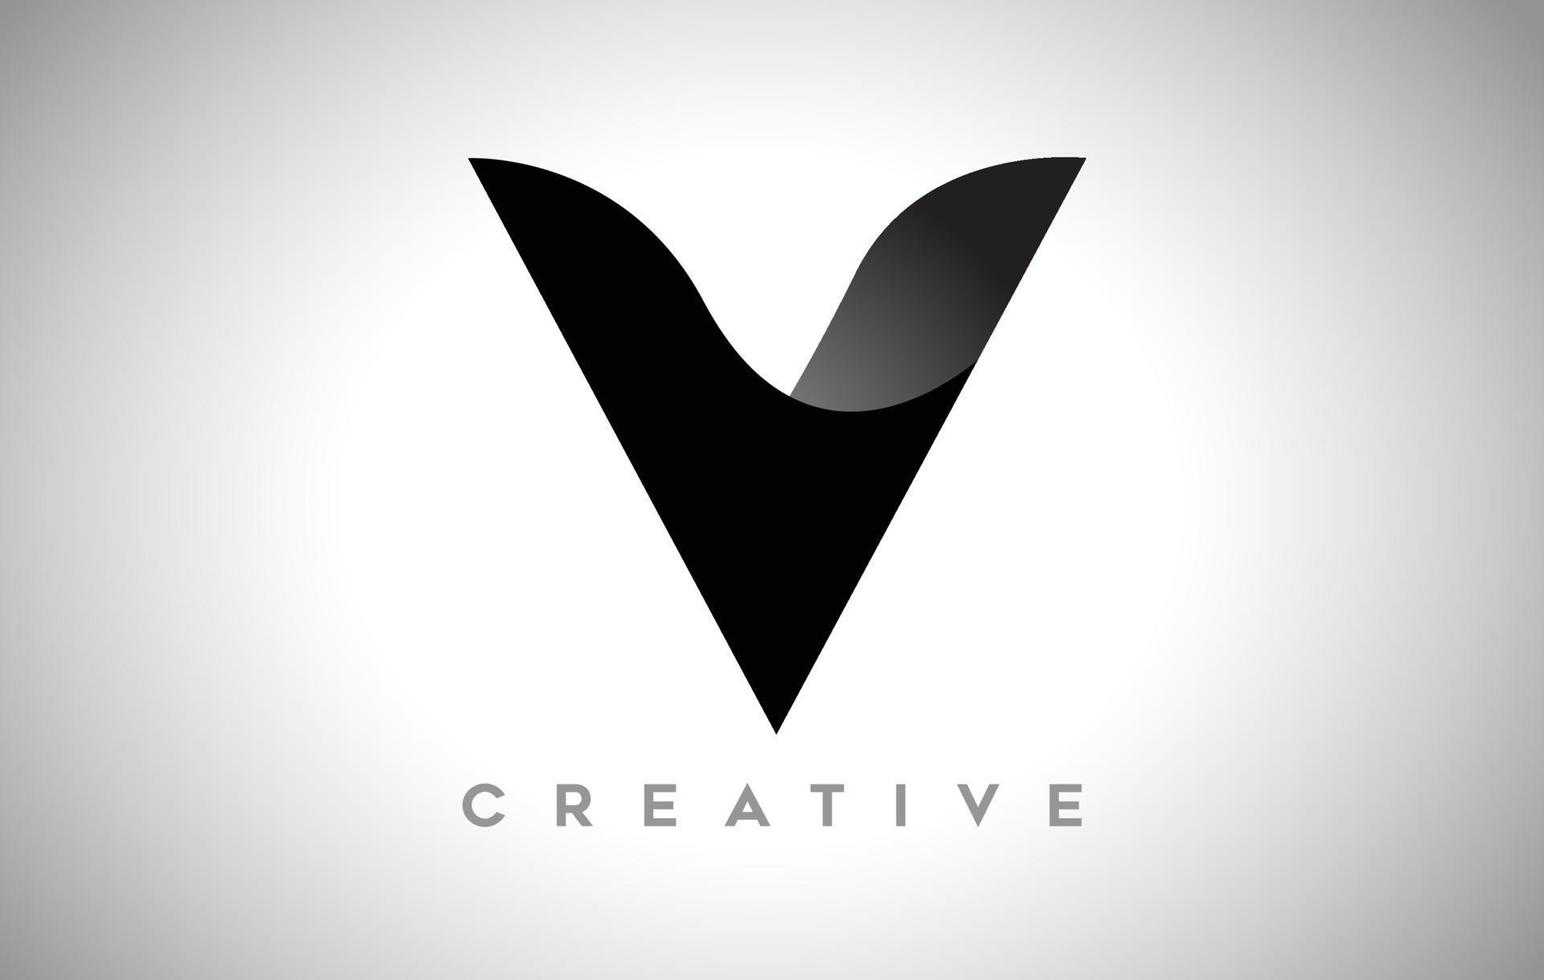 diseño de logotipo de letra v negra con aspecto creativo minimalista y sombra suave en el vector de fondo negro